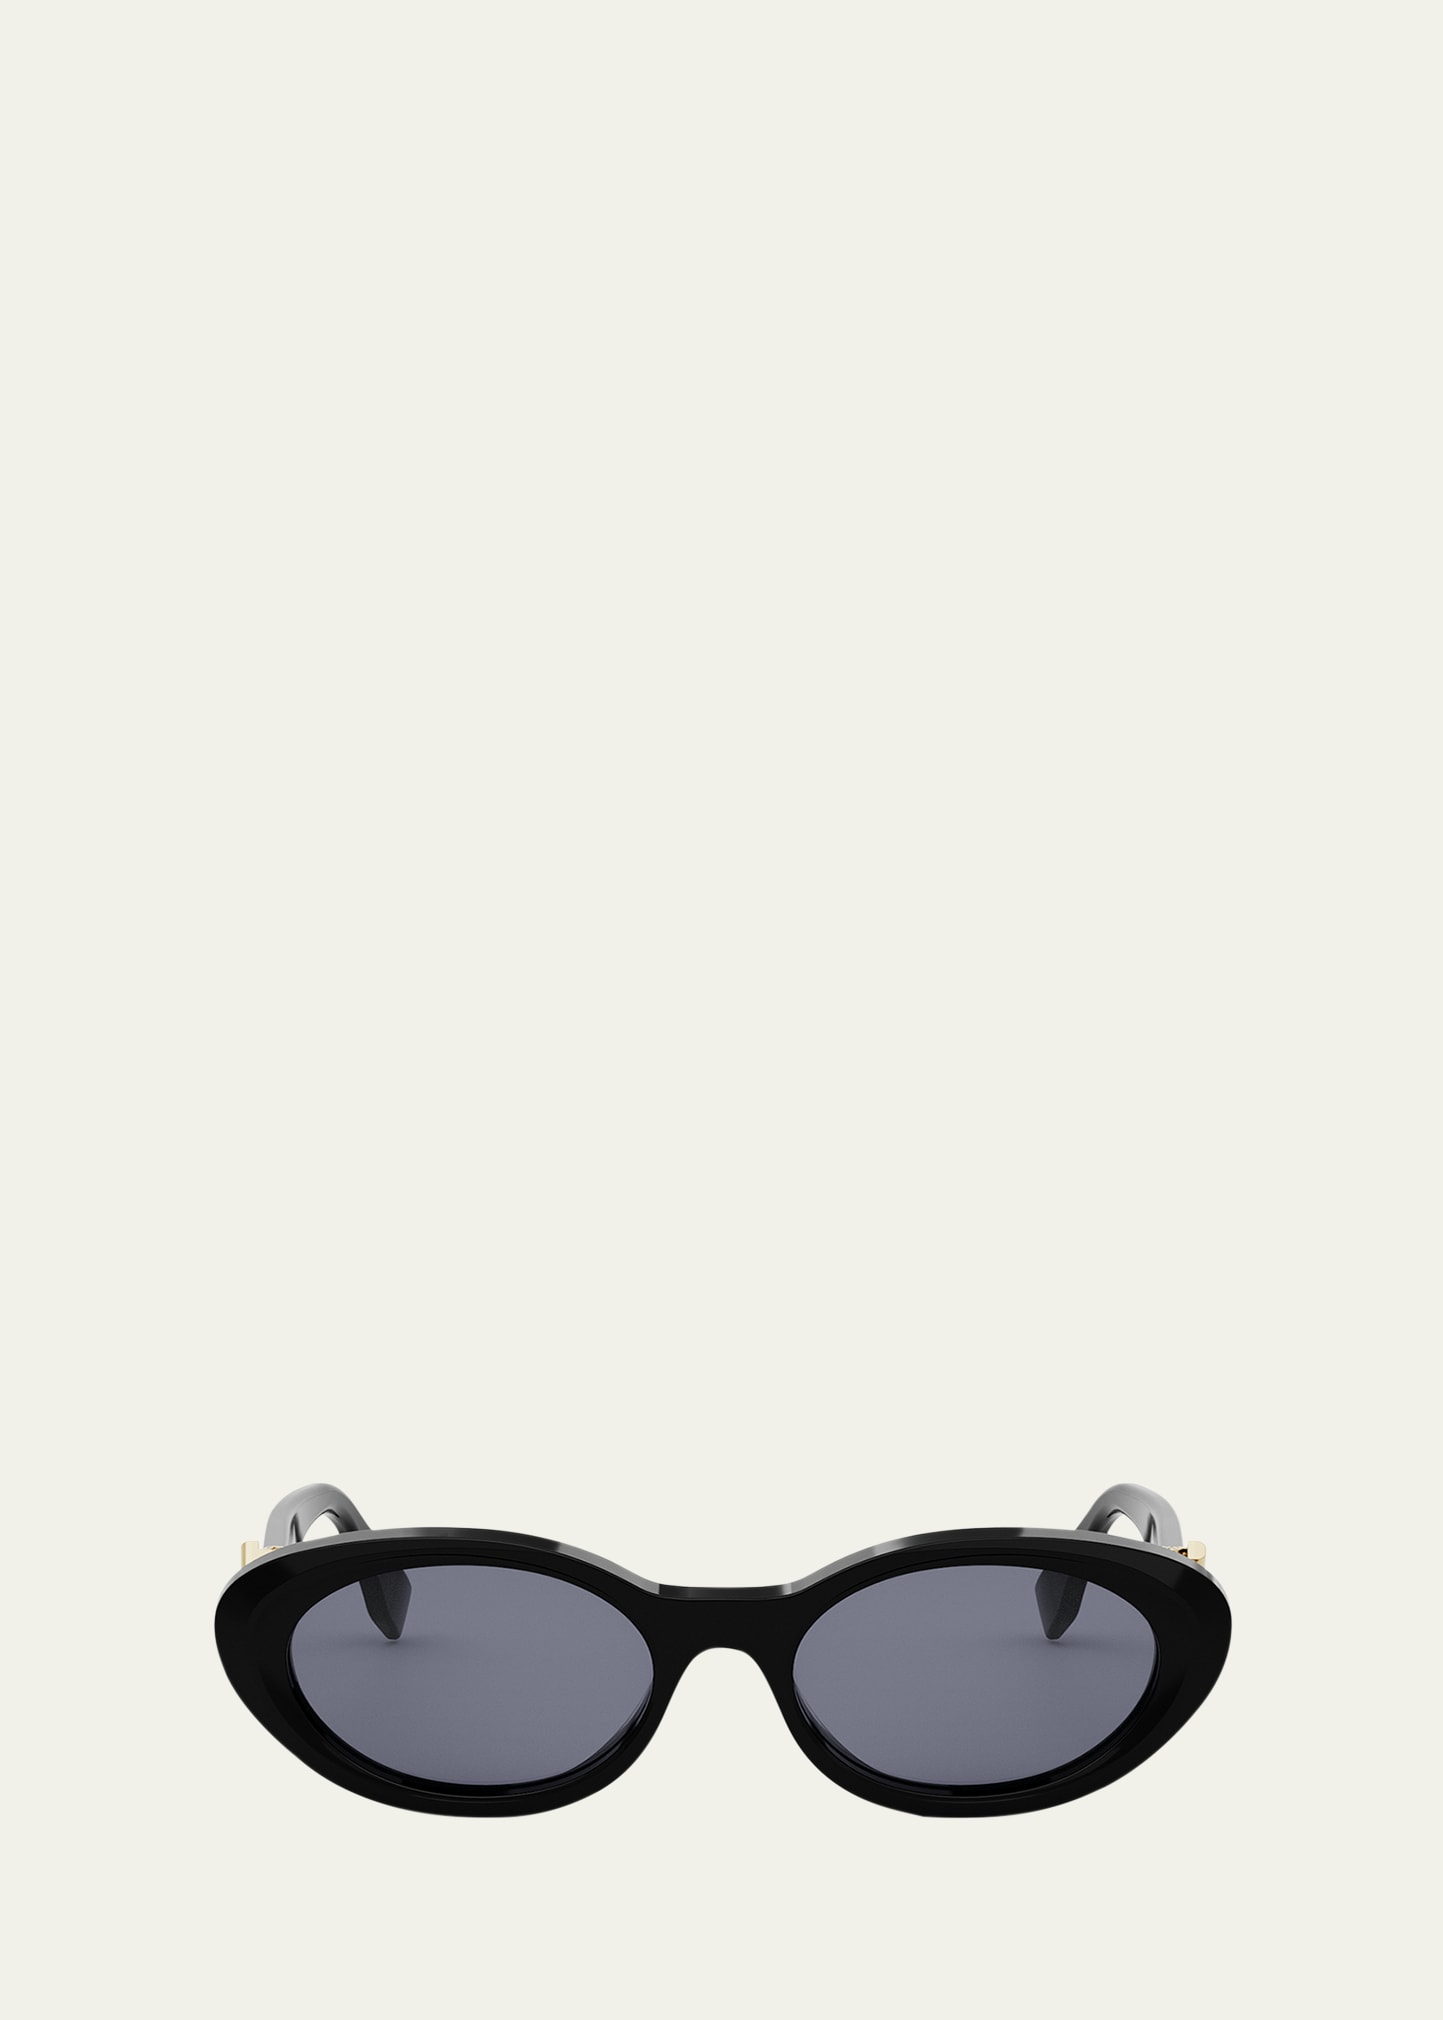 Diamond Black Acetate Oval Sunglasses